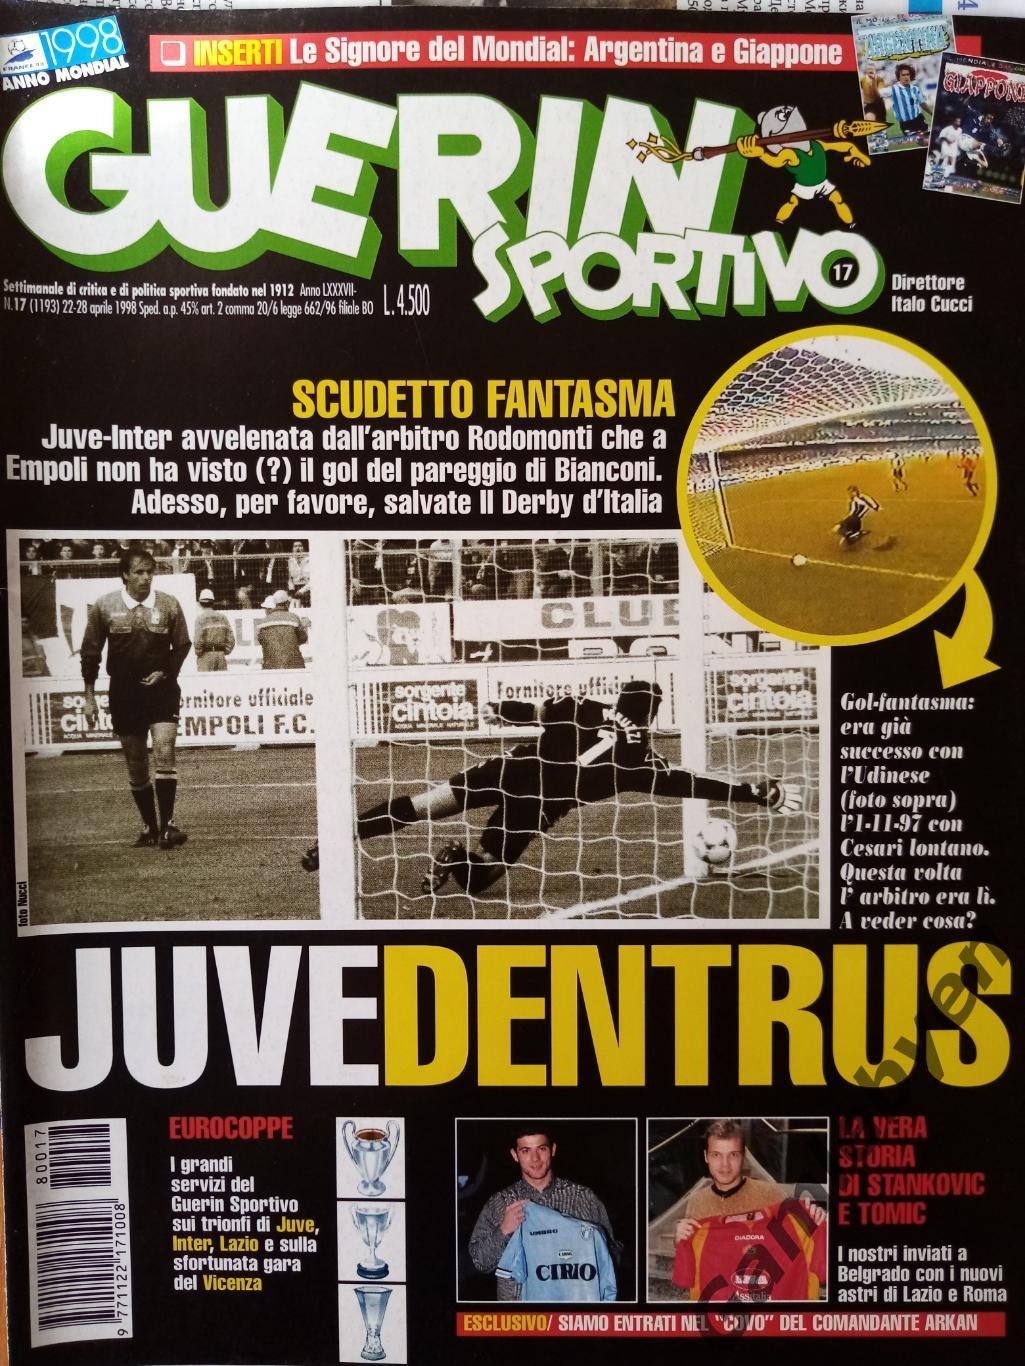 Guerin Sportivo 22-28.04.98